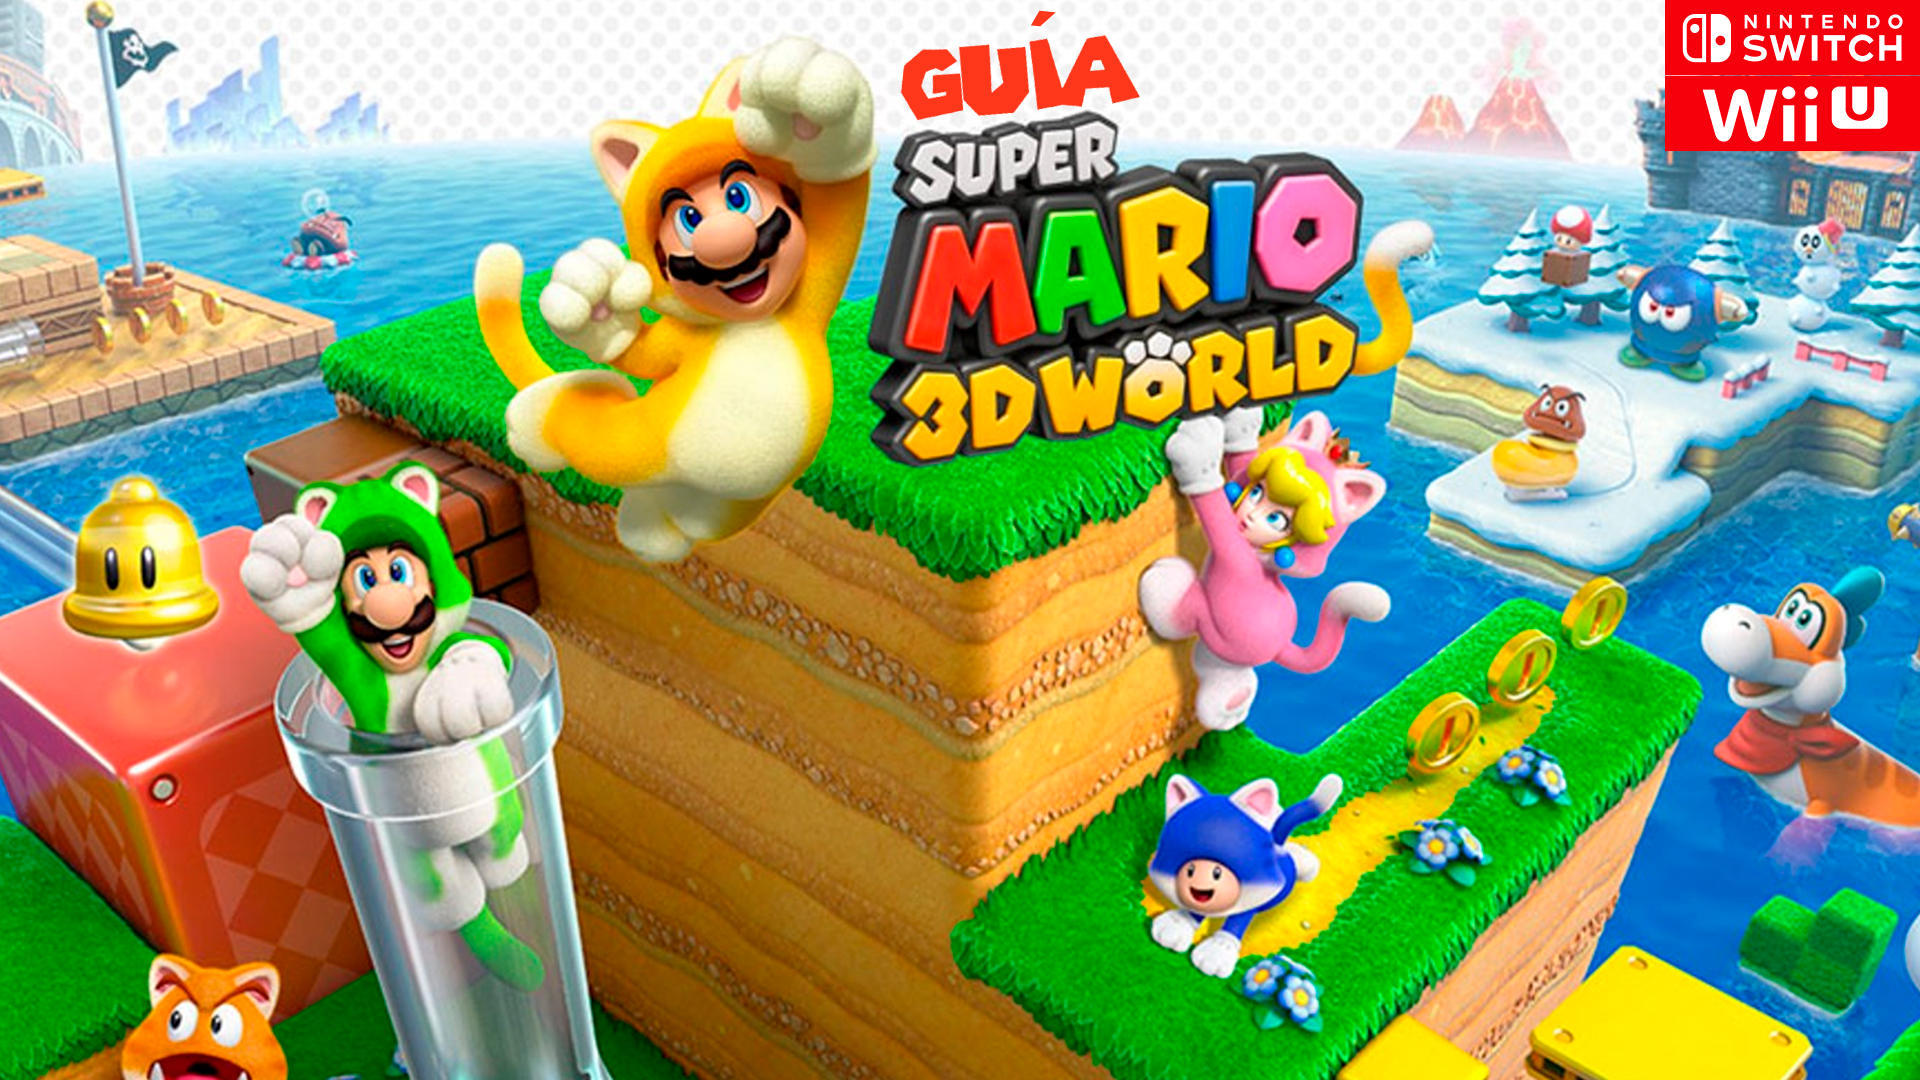 Guía Super Mario 3D World (Switch) trucos, consejos y secretos Vandal